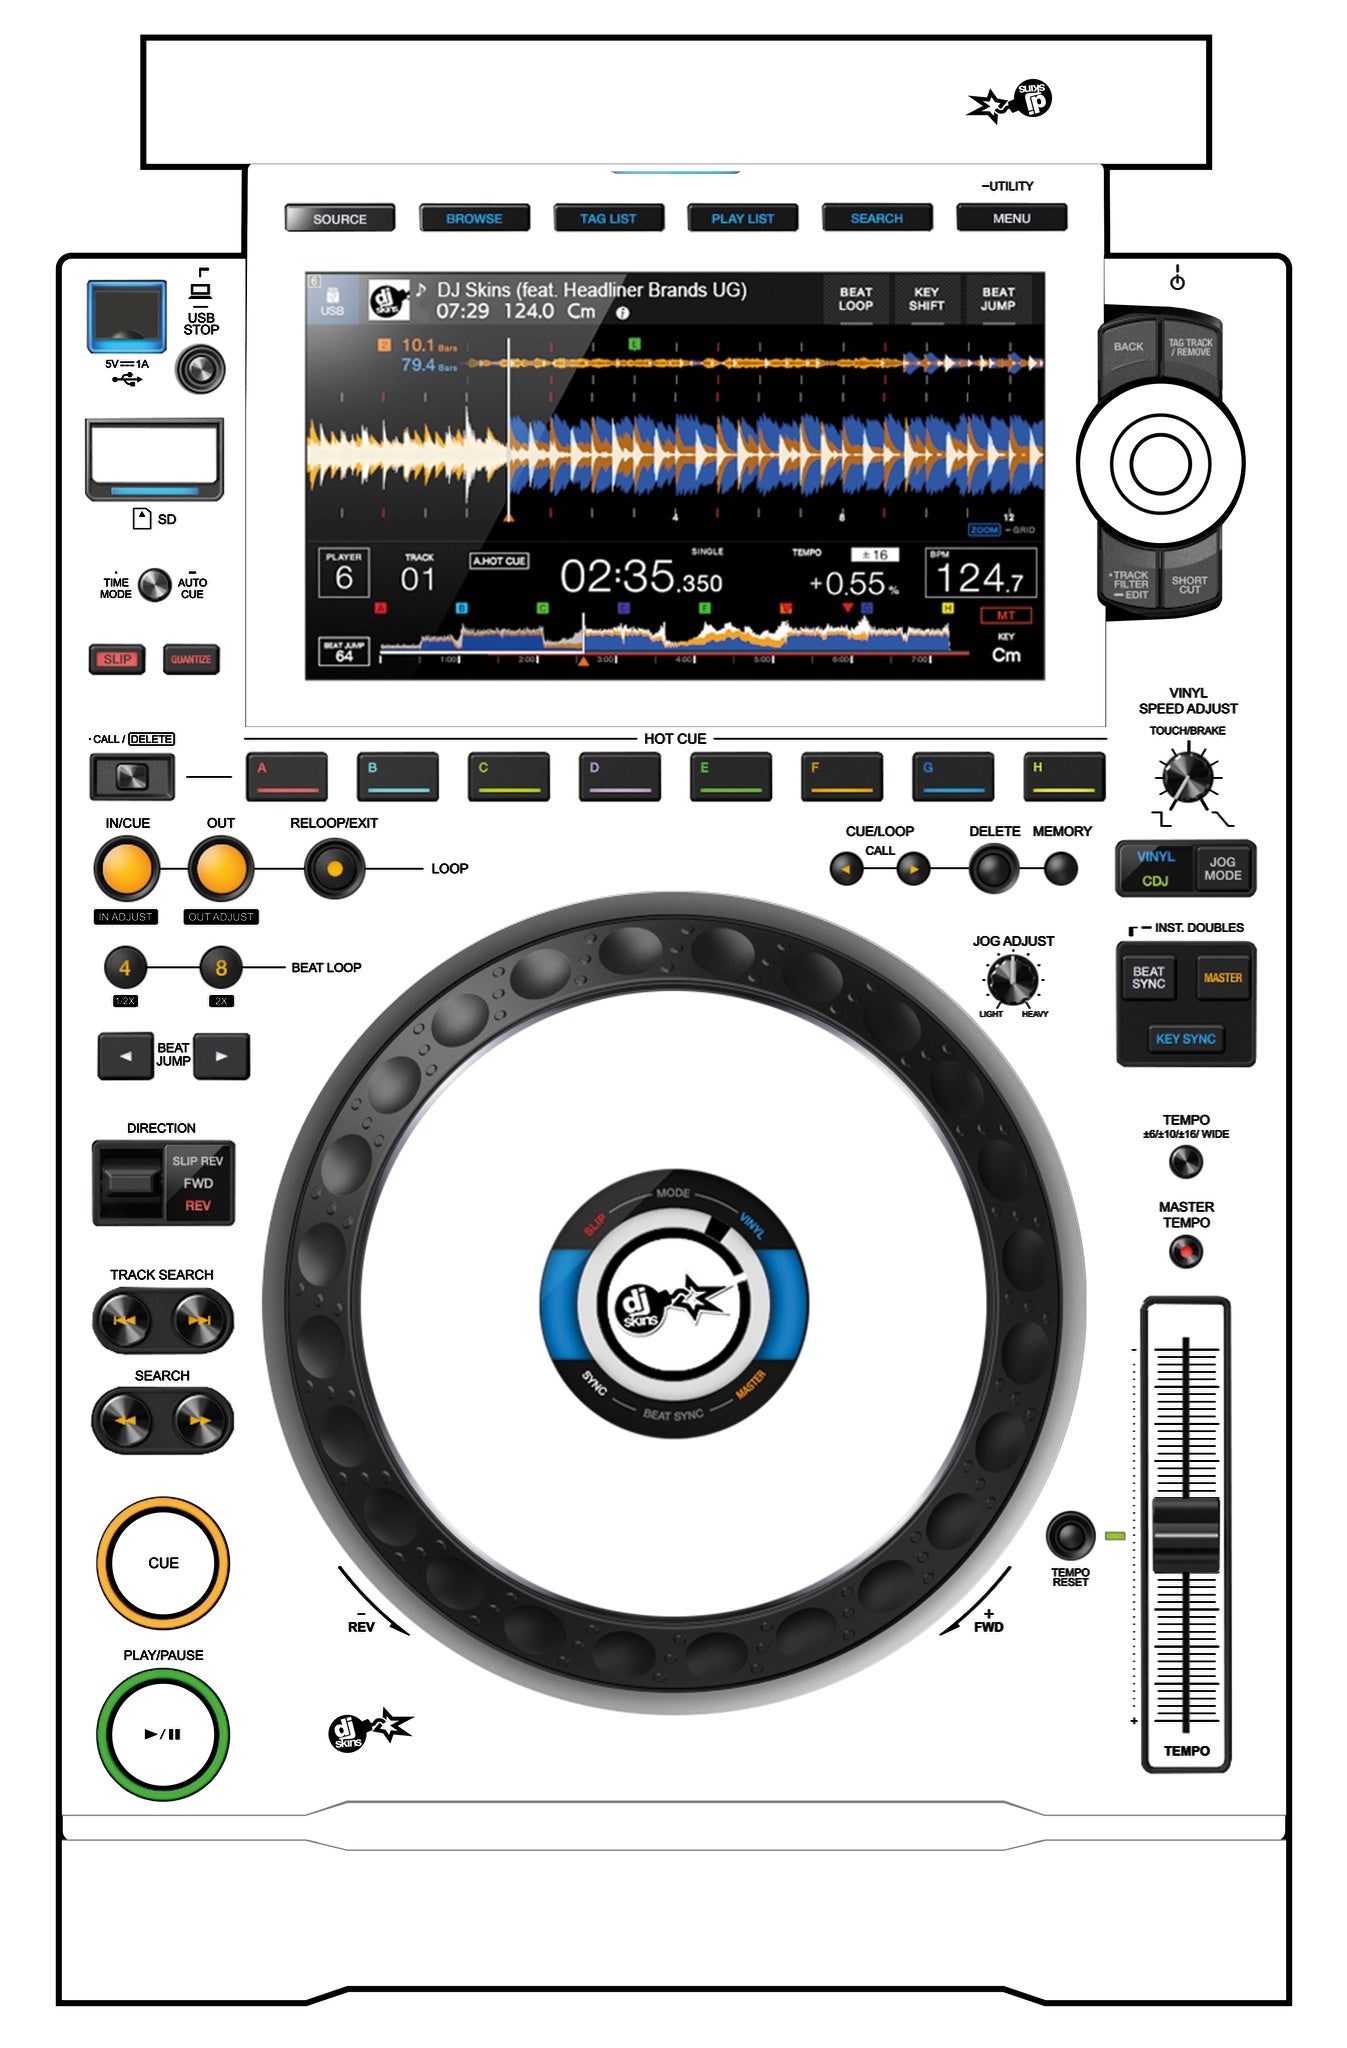 Pioneer DJ CDJ-3000 